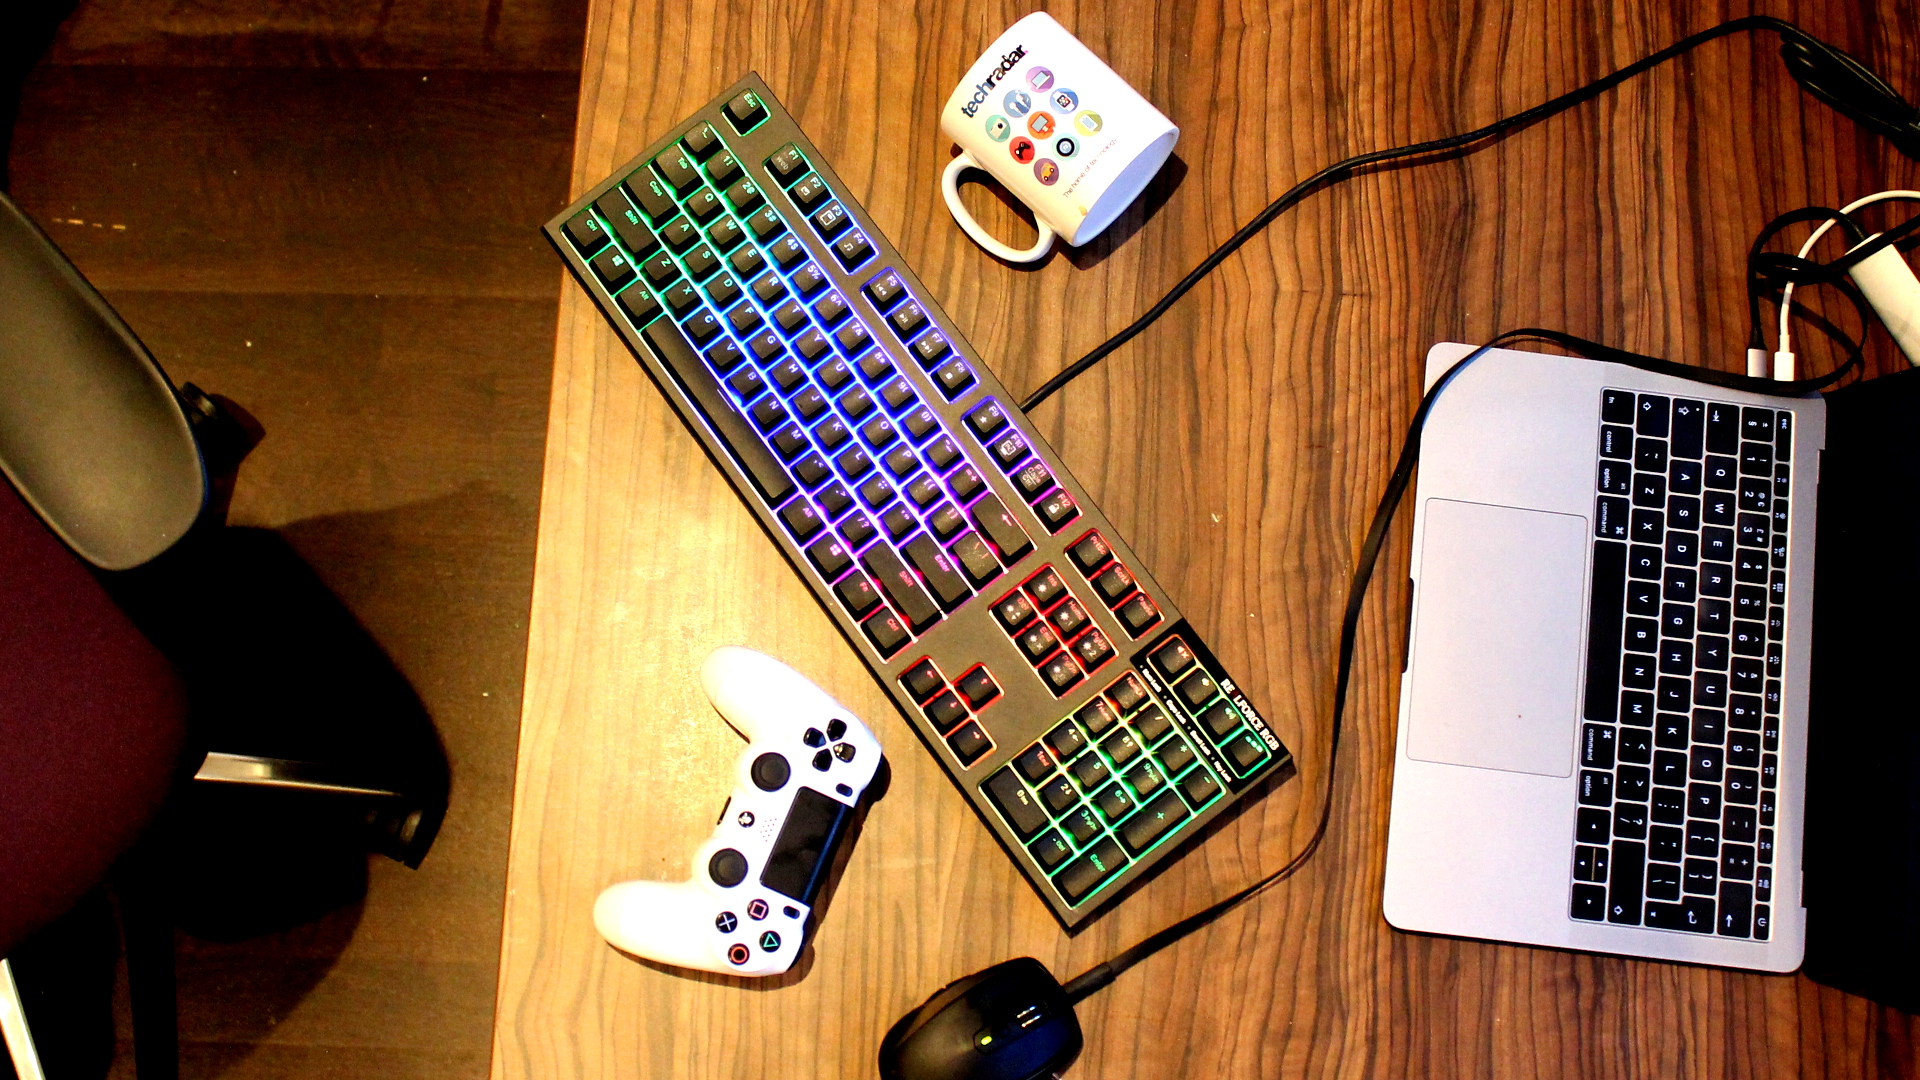 a brightly lit gaming keyboard